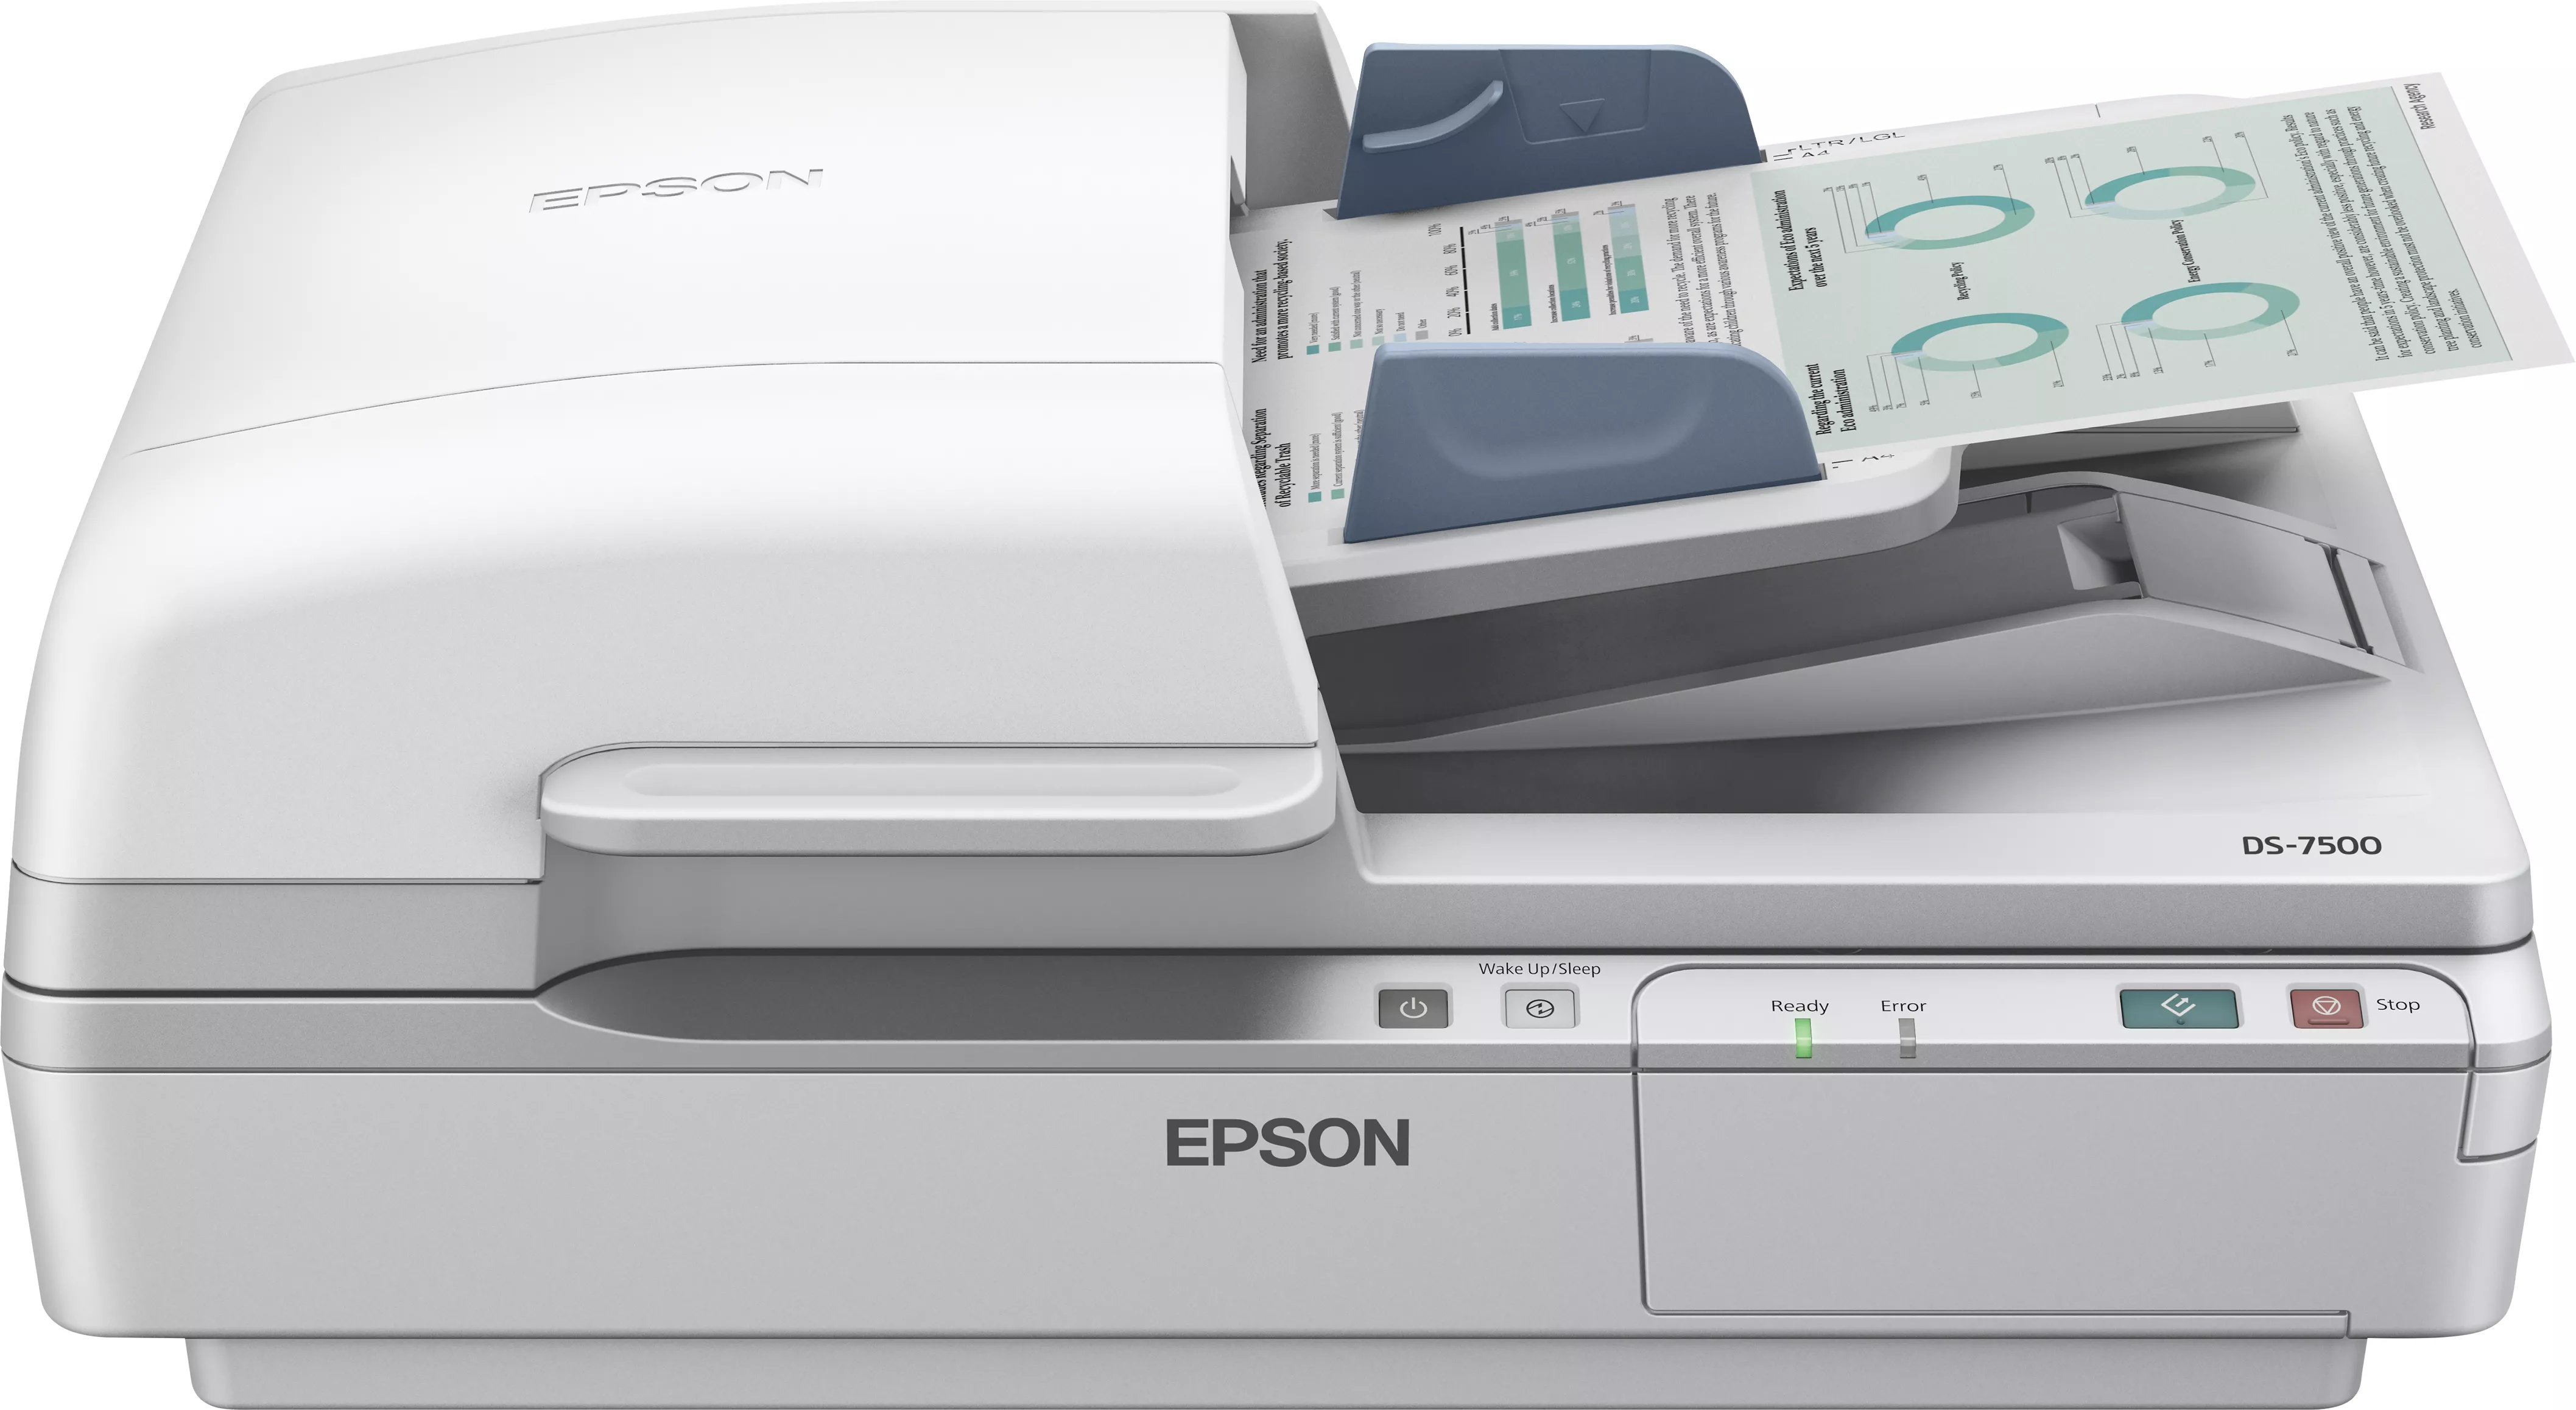 Achat EPSON Workforce DS-6500 Power PDF au meilleur prix